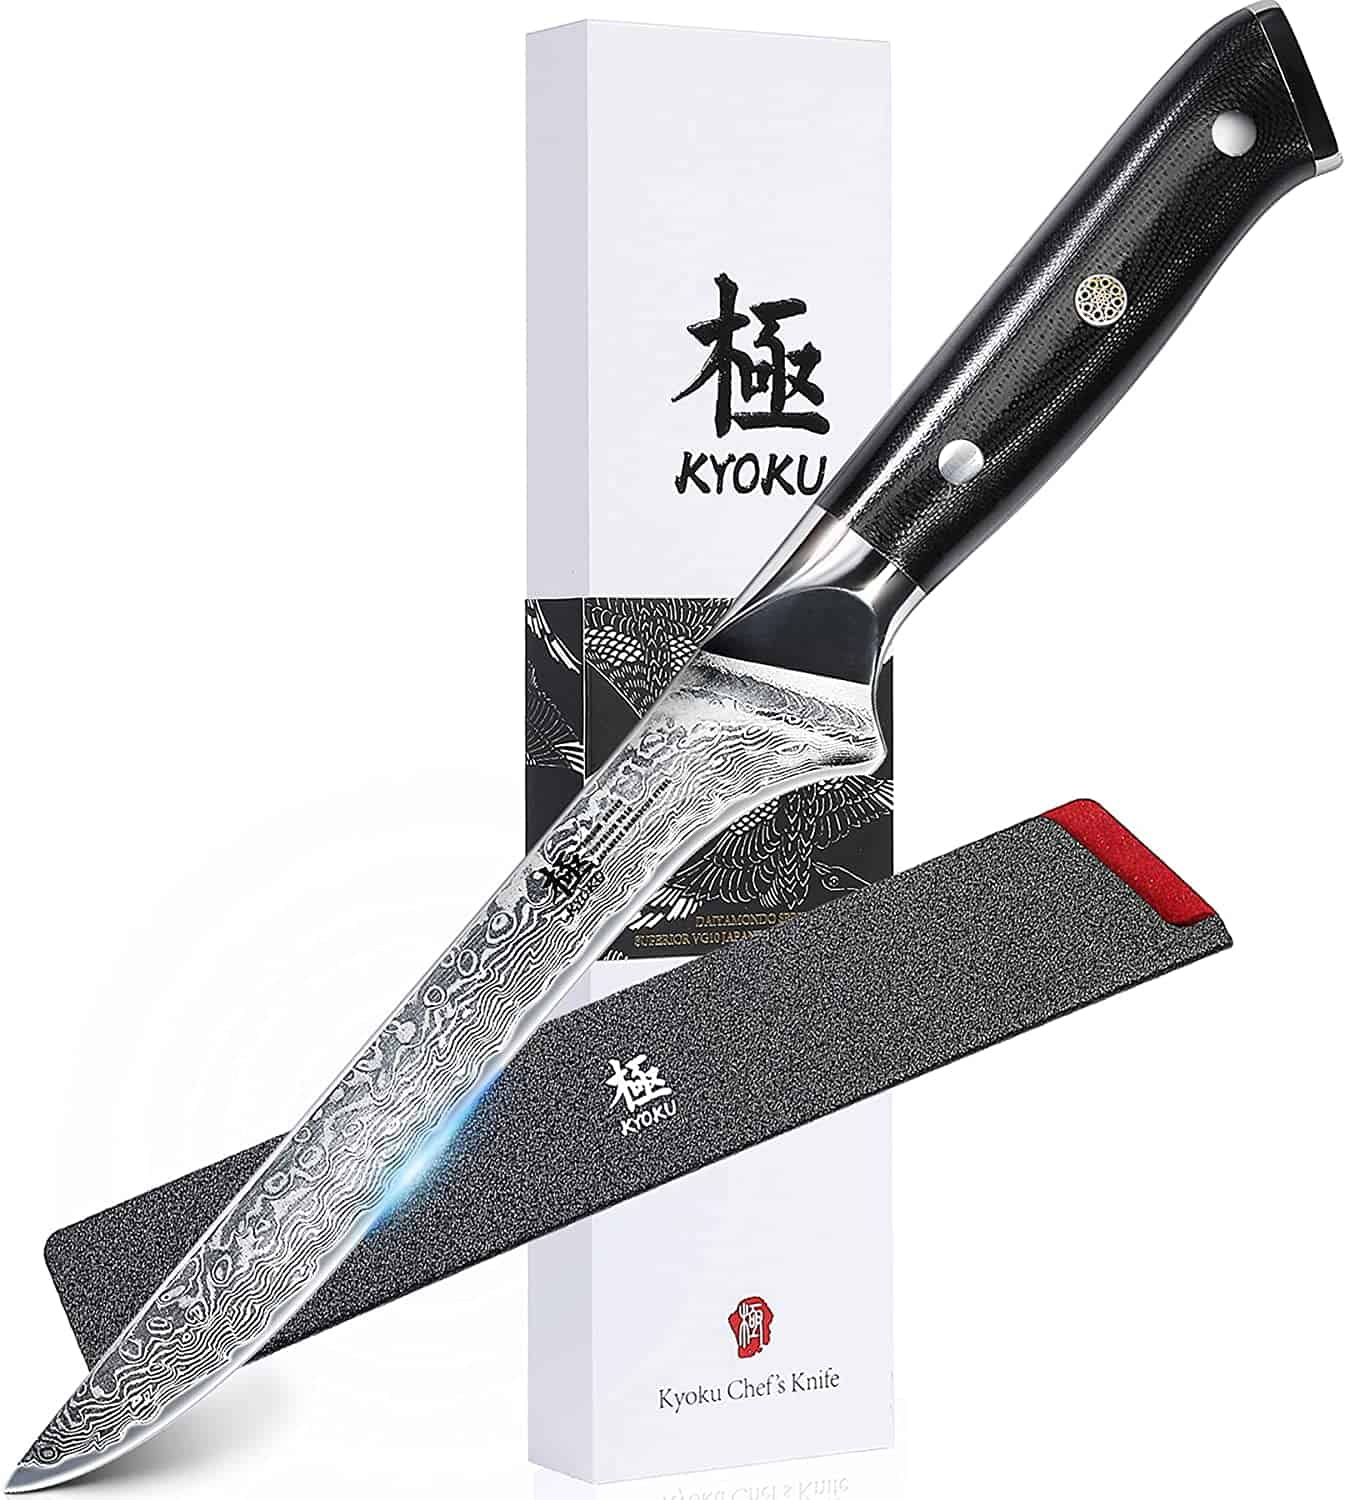 มีดกระดูกเหล็ก VG-10 ที่ดีที่สุด- KYOKU Boning Knife 7 Shogun Series